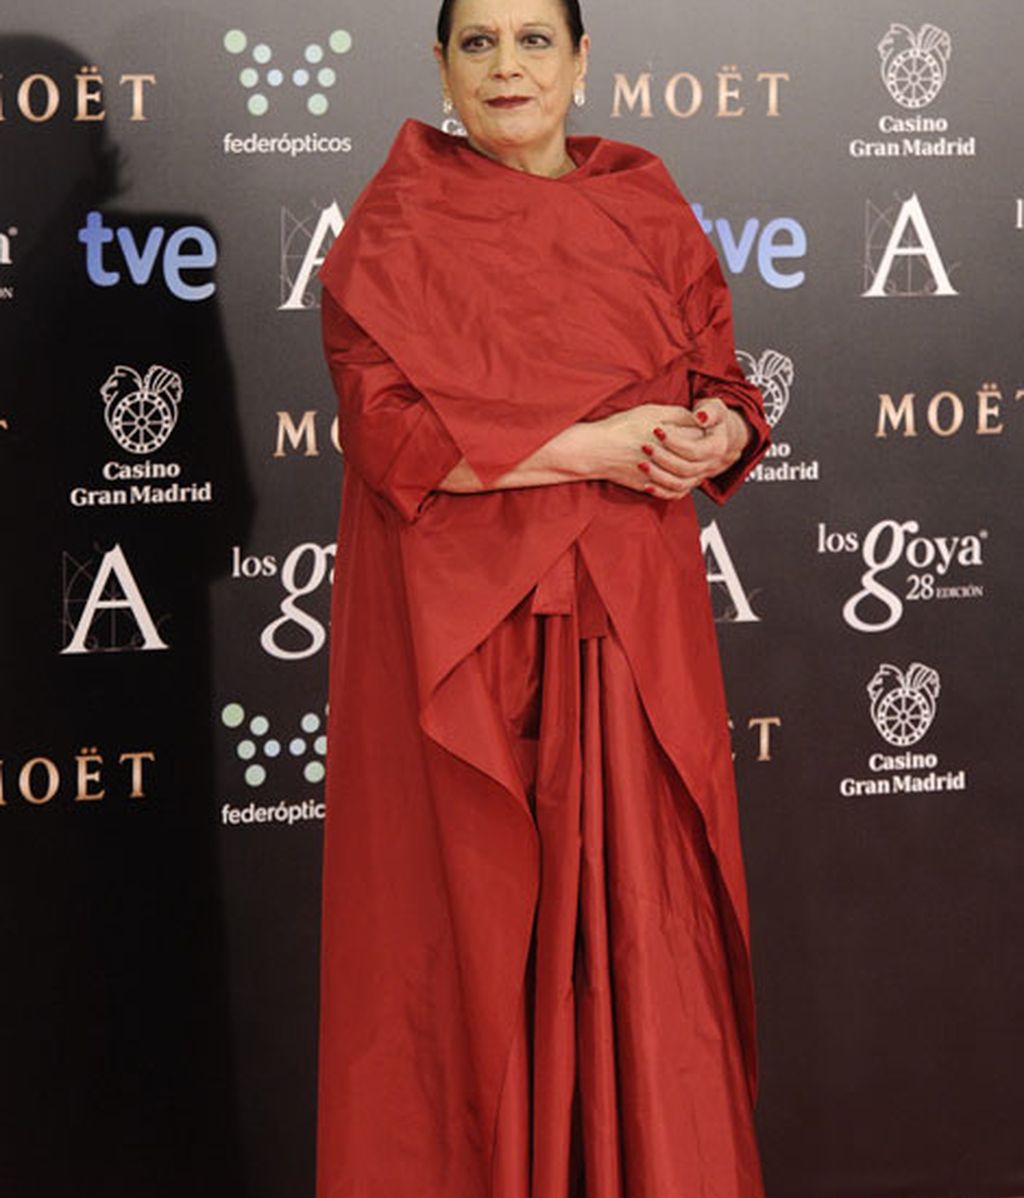 Vestidos de cola y escotazos, protagonistas de la alfombra roja de los premios Goya